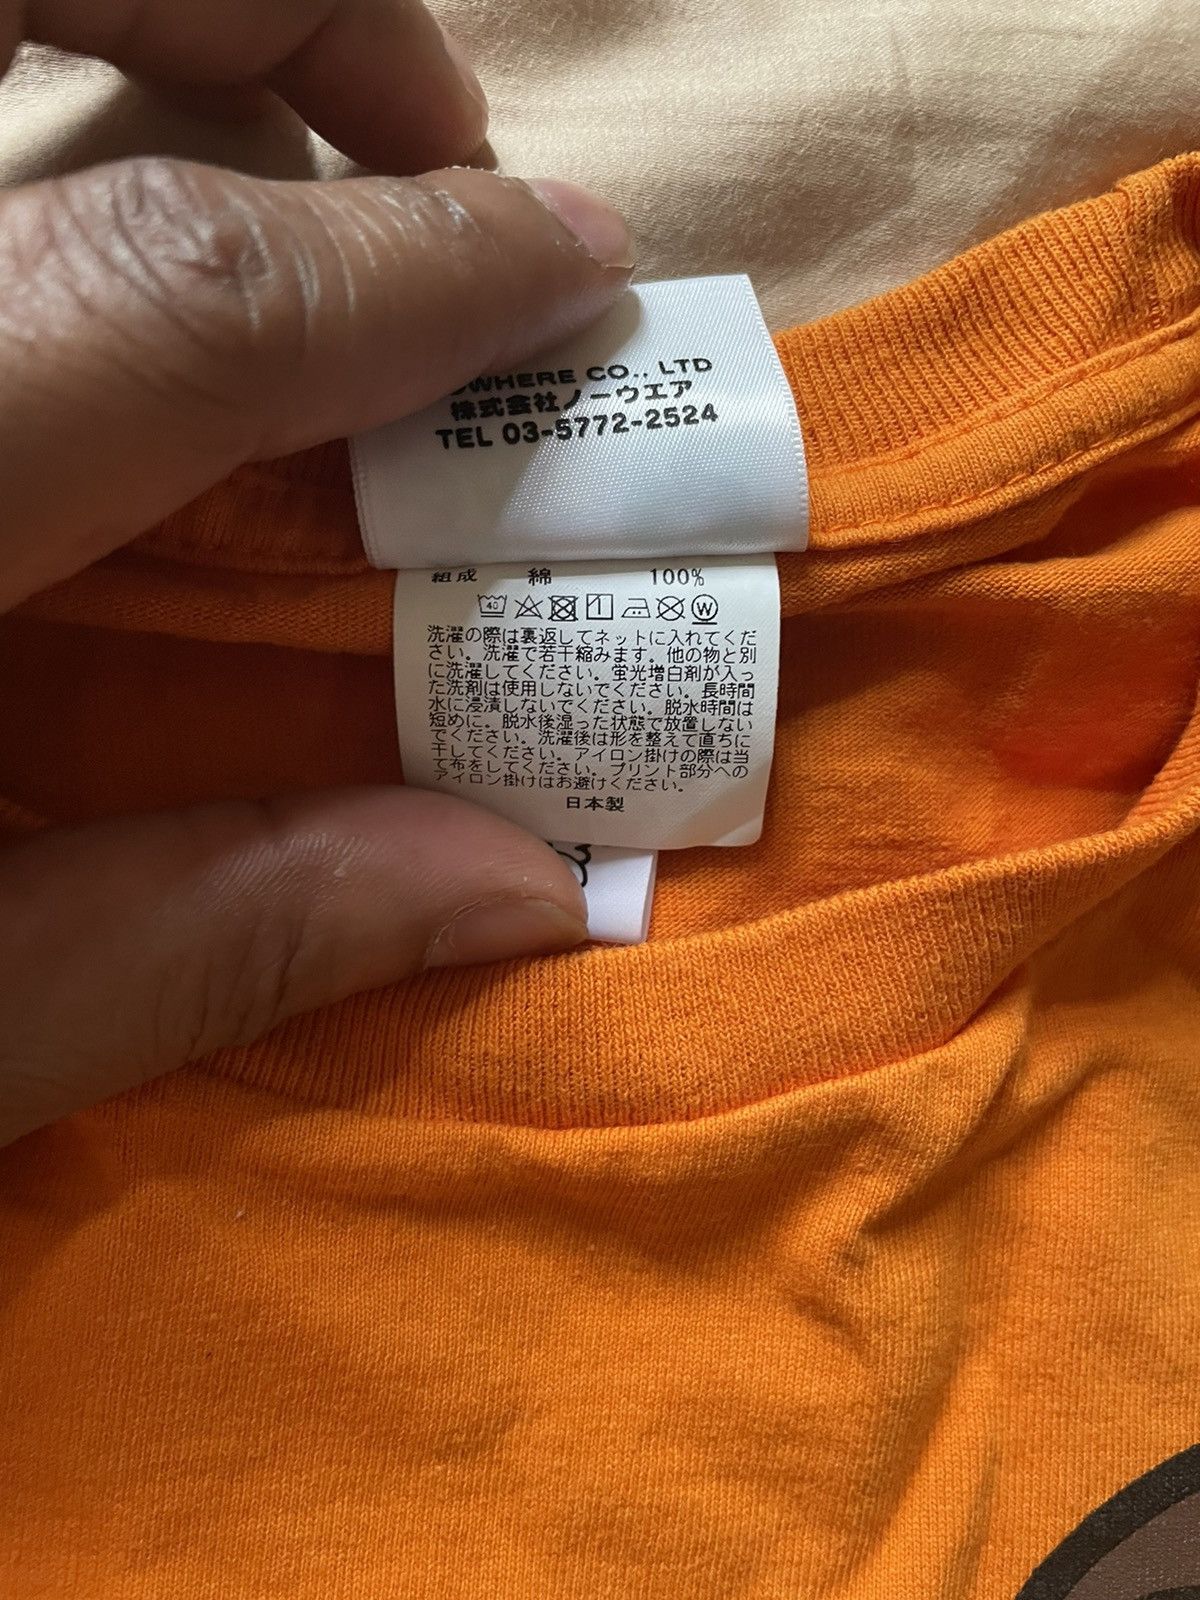 Bape Bape Dragon ball Z Vegeta Gohan Krillin Milo Orange T Shirt Size US L / EU 52-54 / 3 - 4 Thumbnail